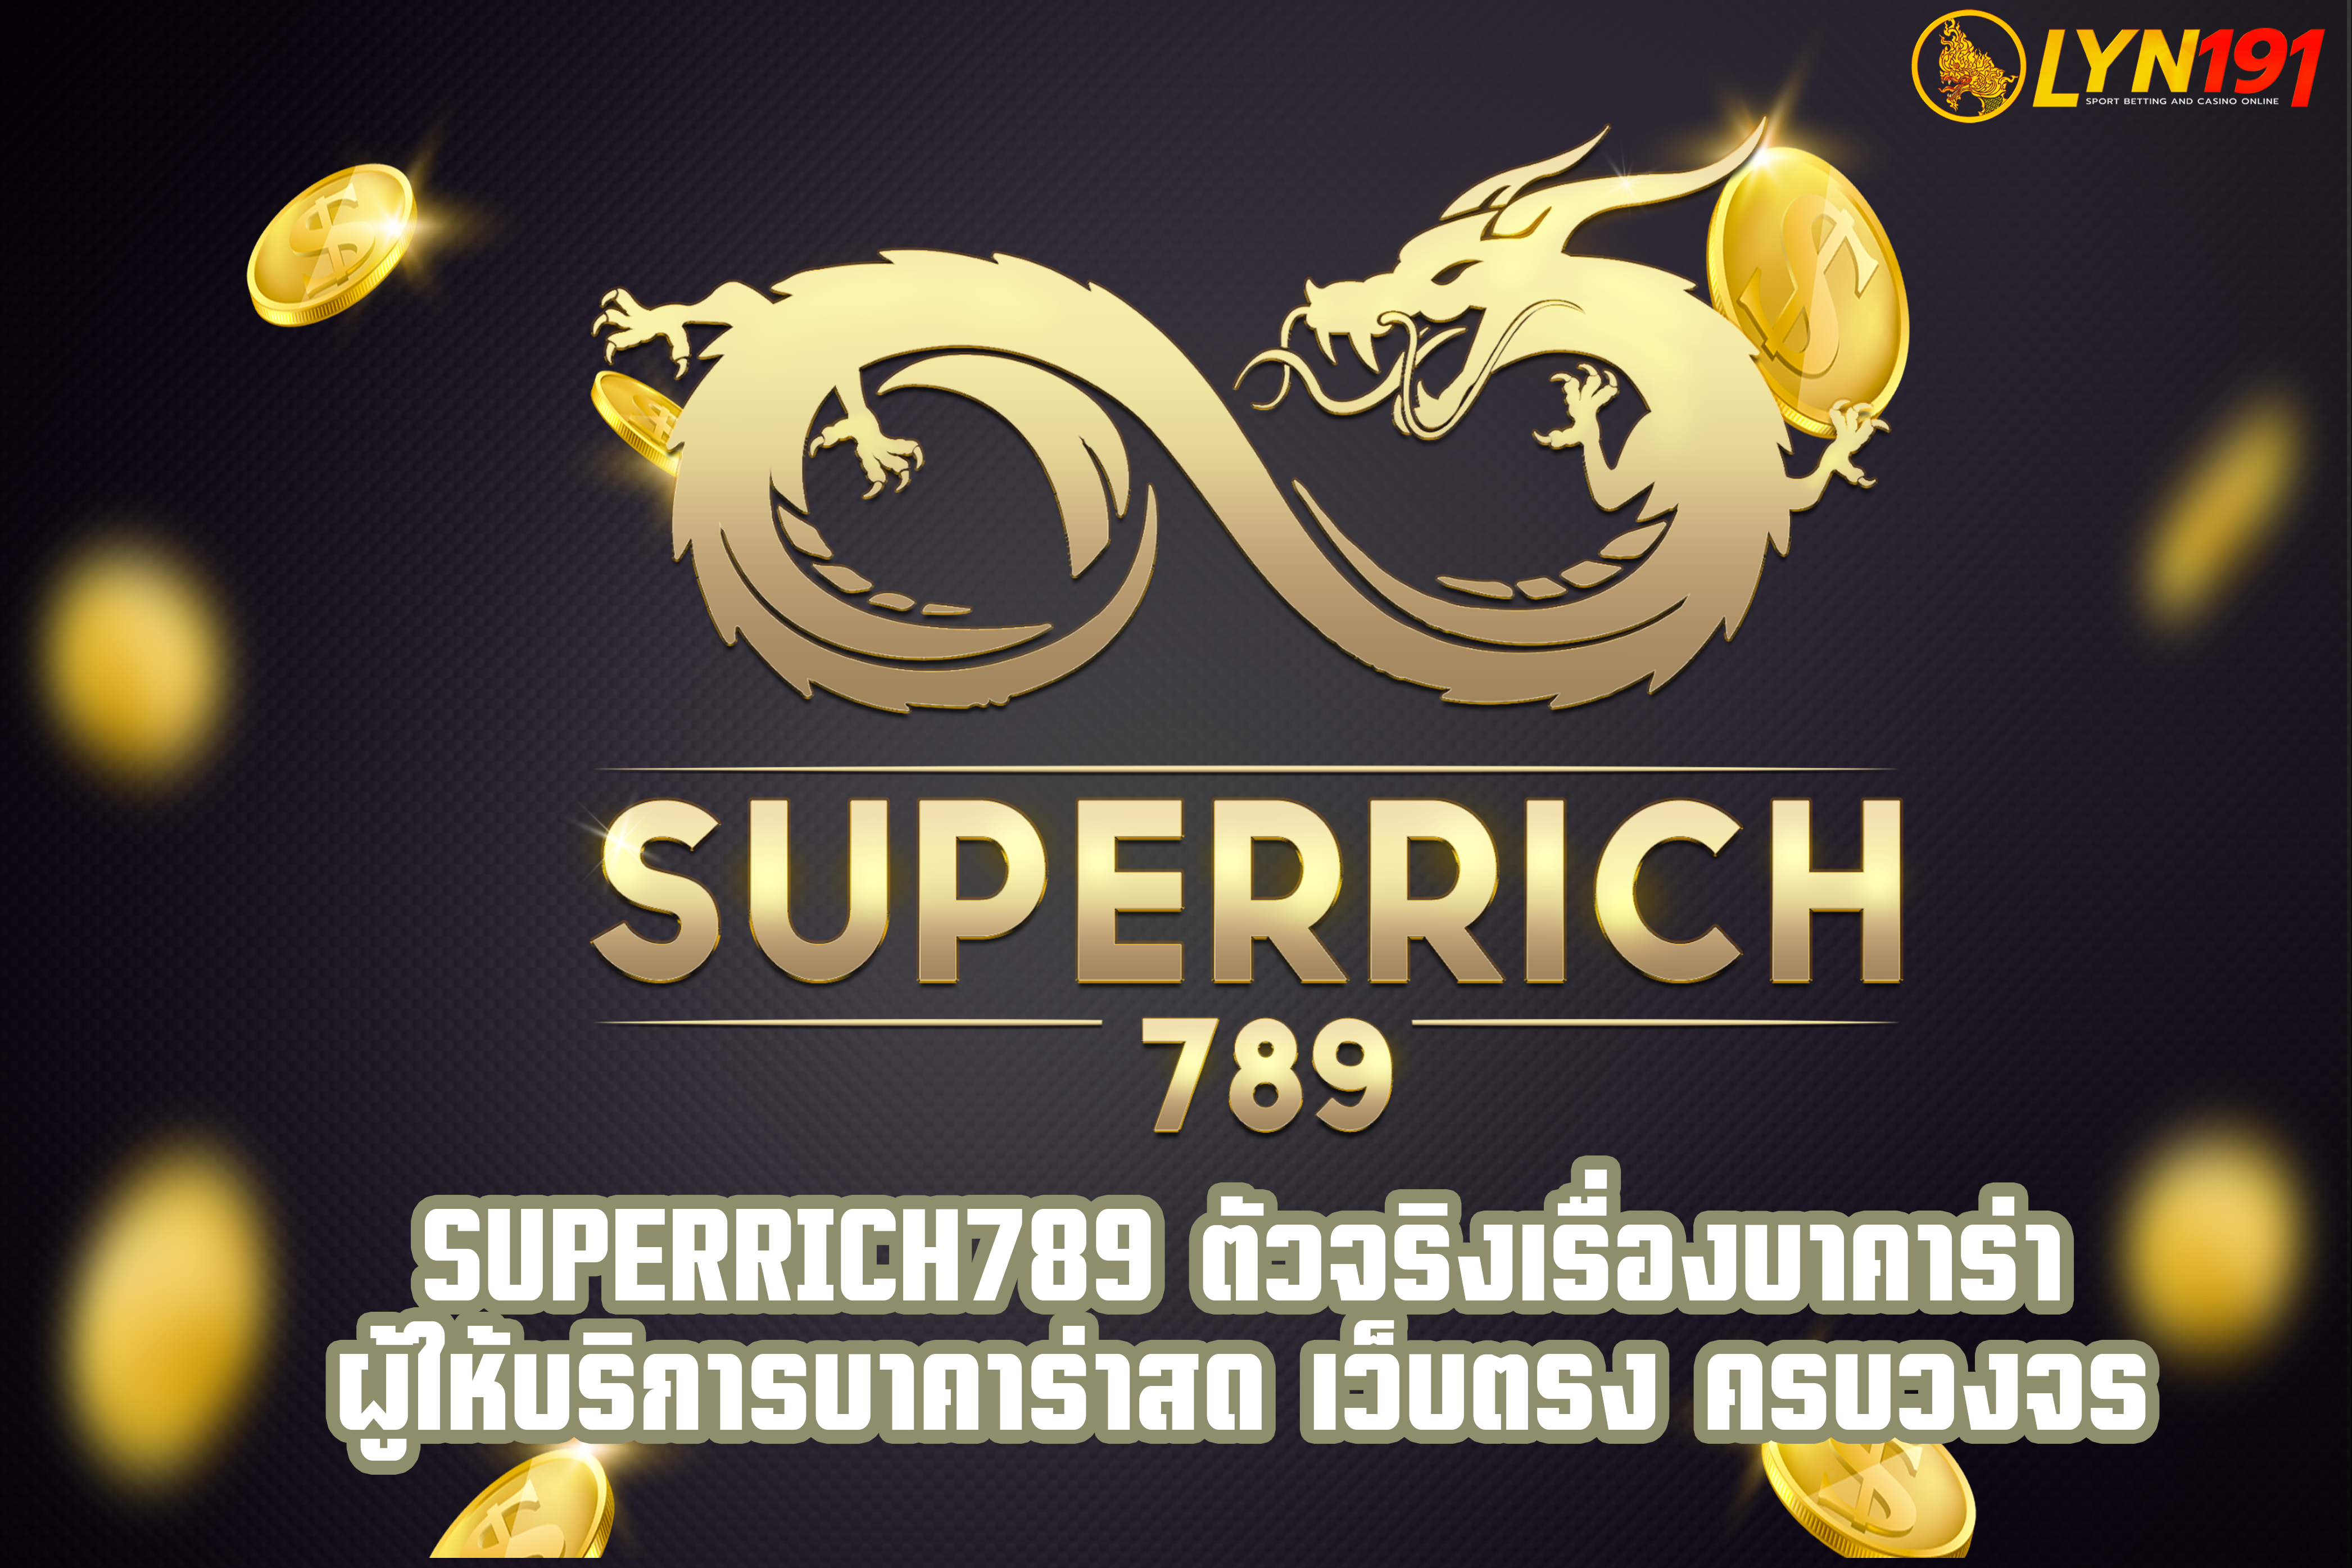 Superrich789 ตัวจริงเรื่องบาคาร่า ผู้ให้บริการบาคาร่าสด เว็บตรง ครบวงจร